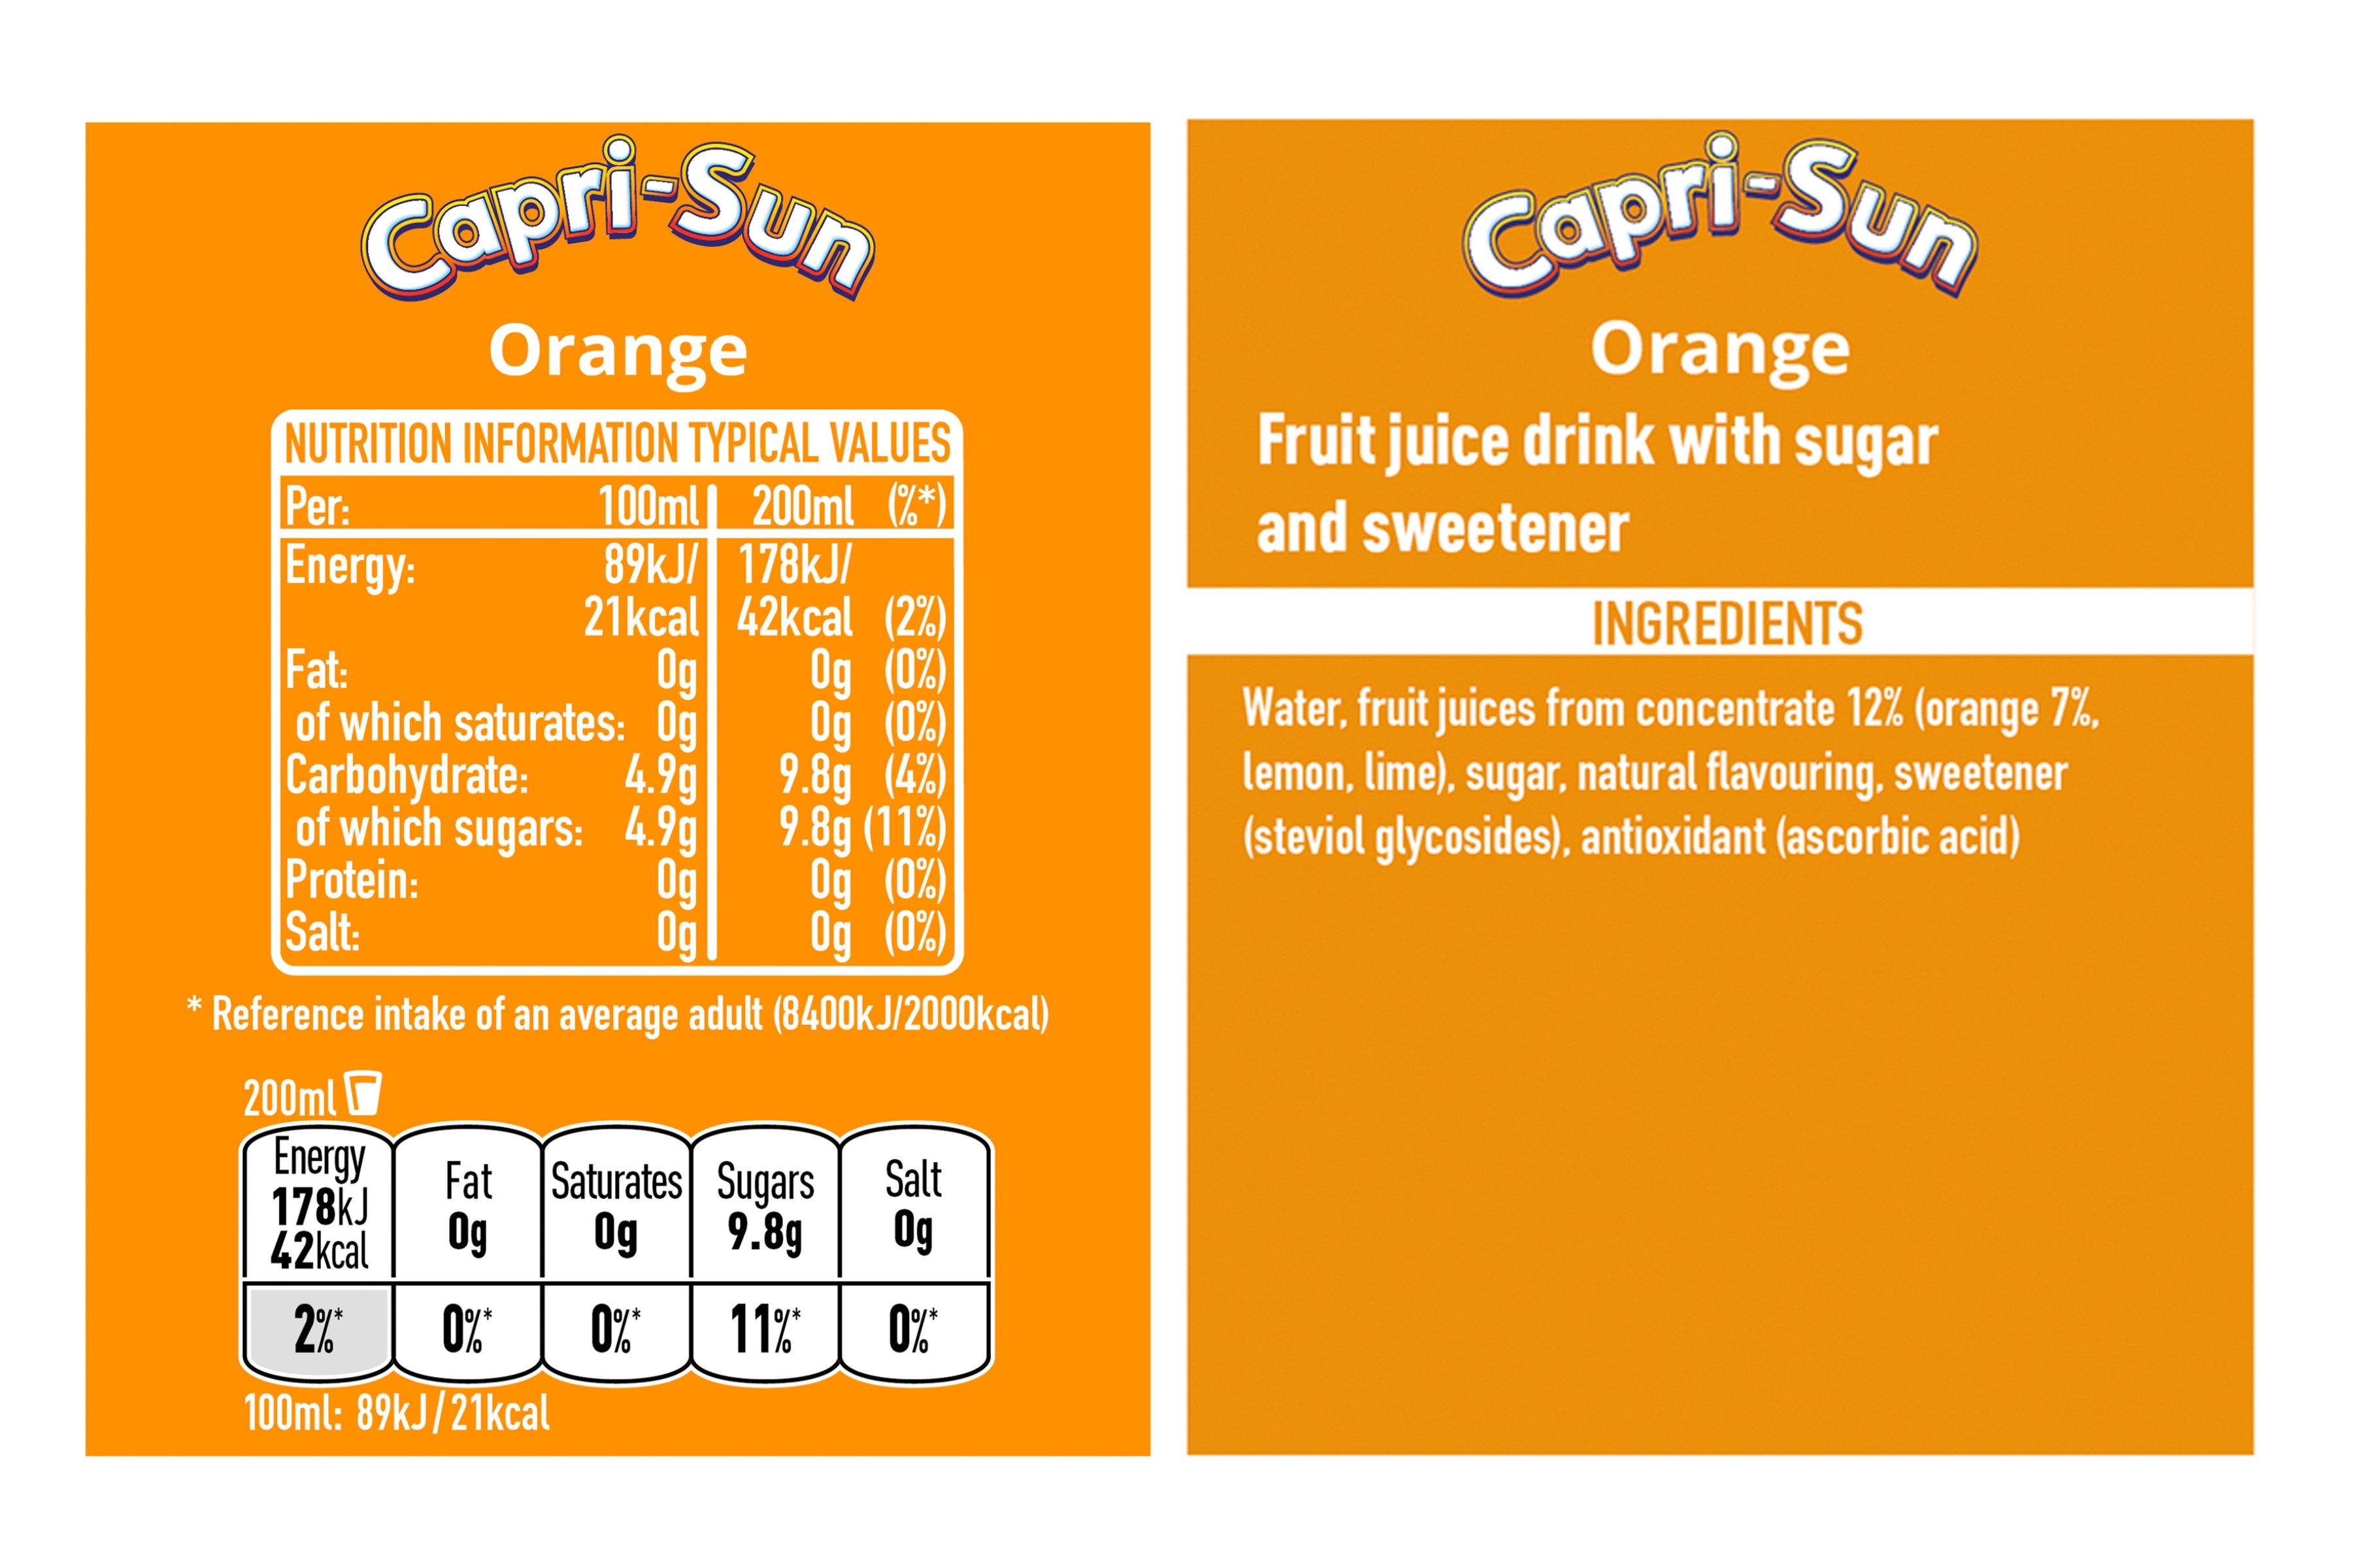 Capri- Sun Orange 8 x 200ml